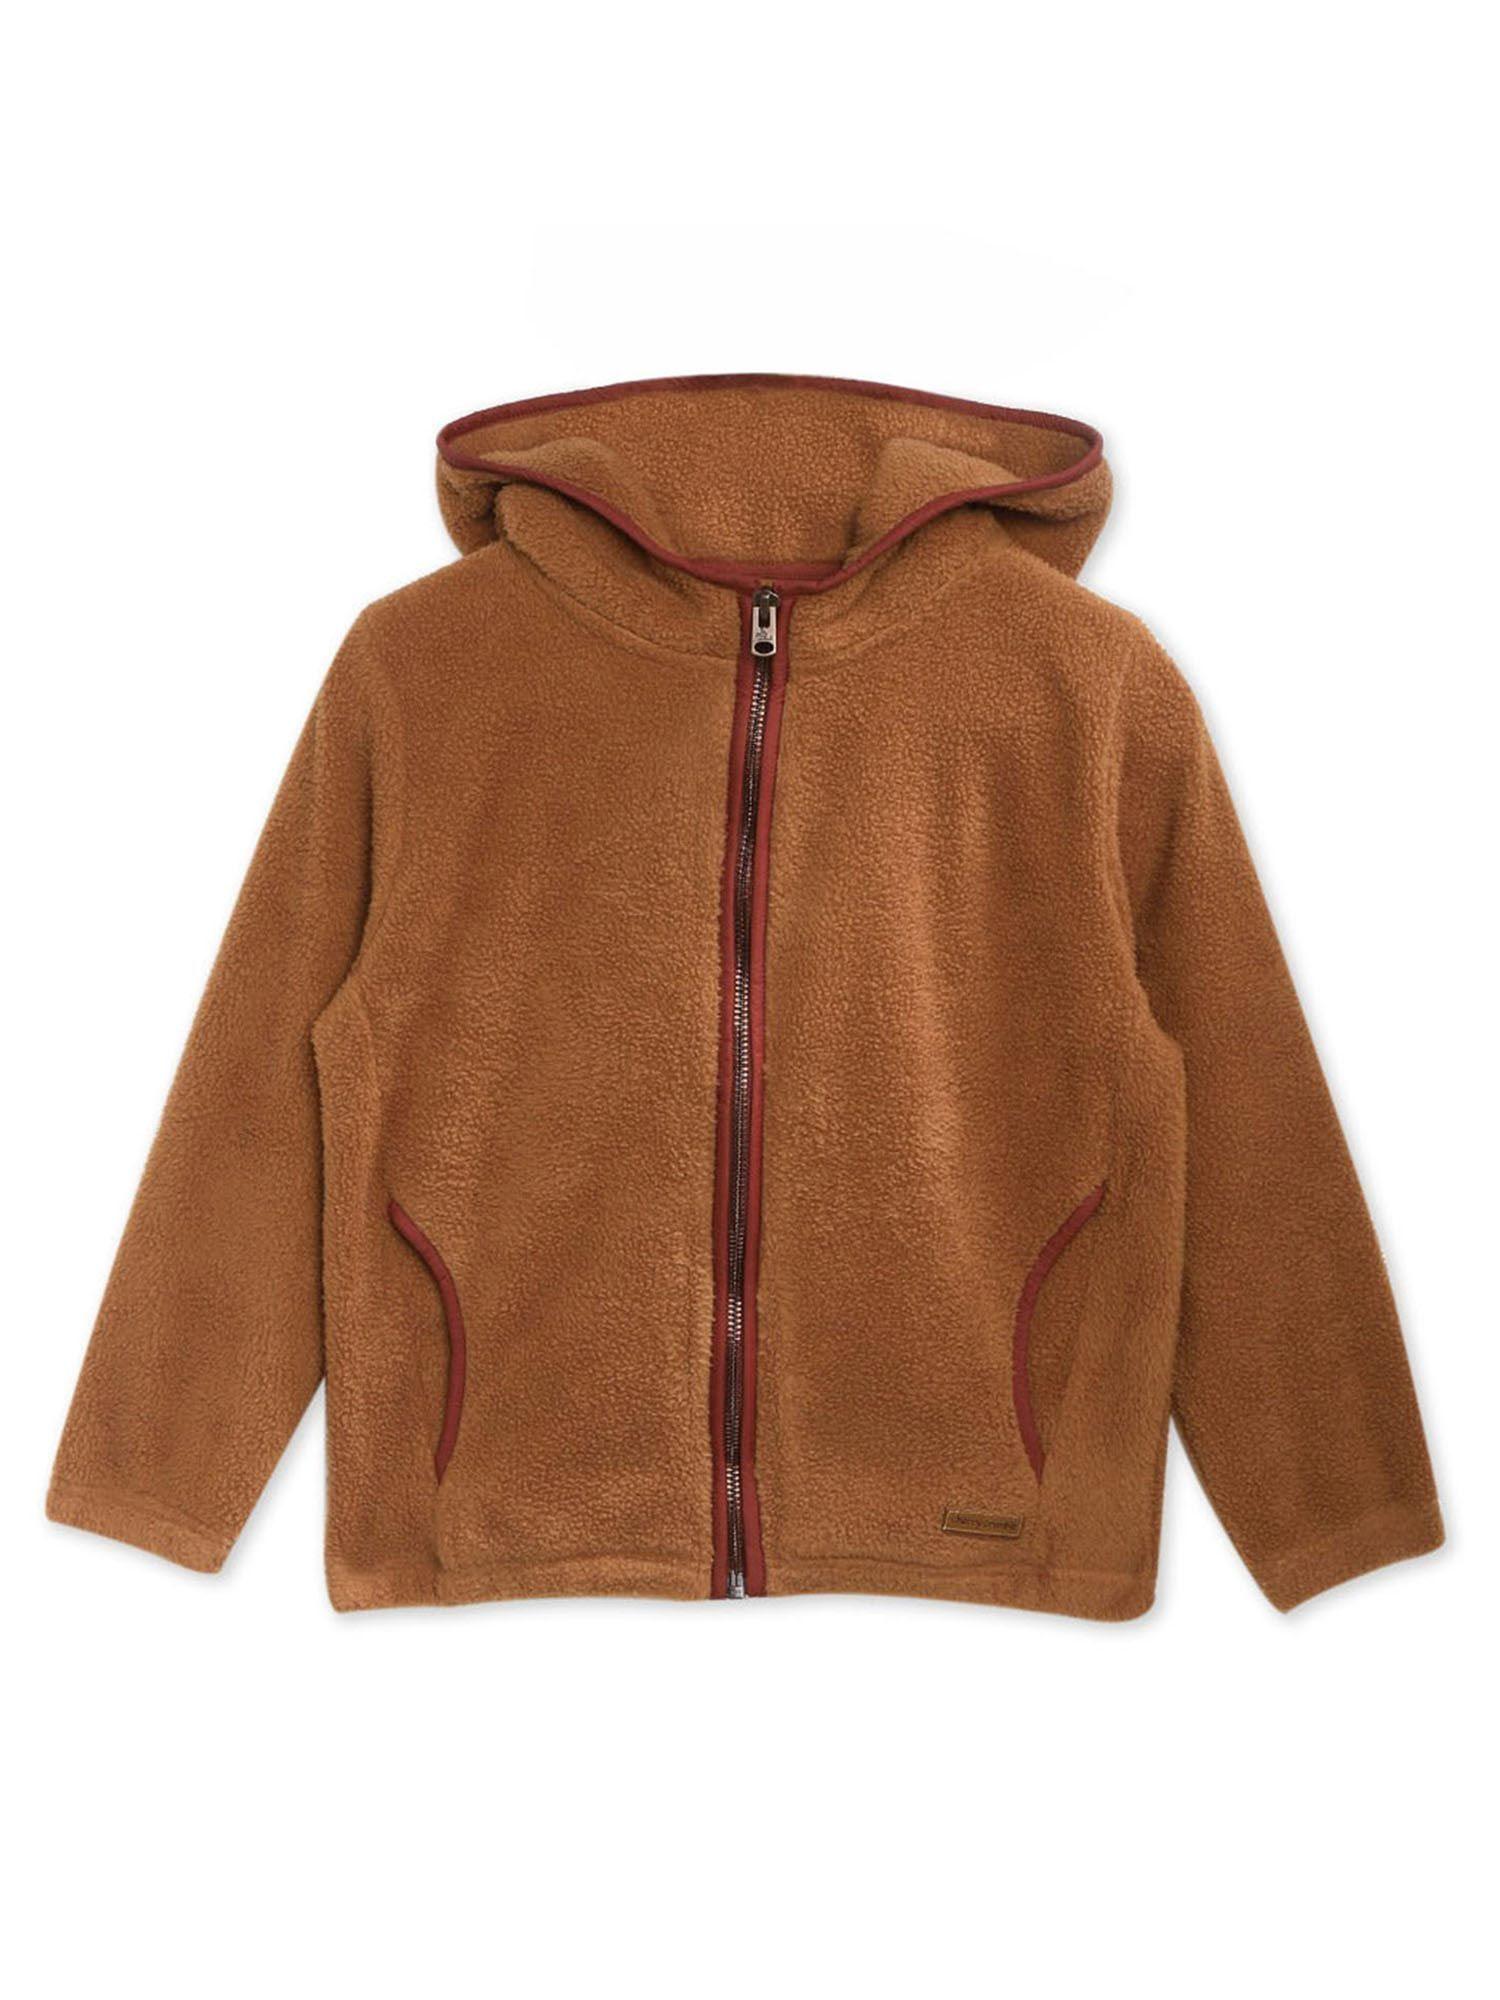 brown polar fleece zipper hoodie sweatshirt